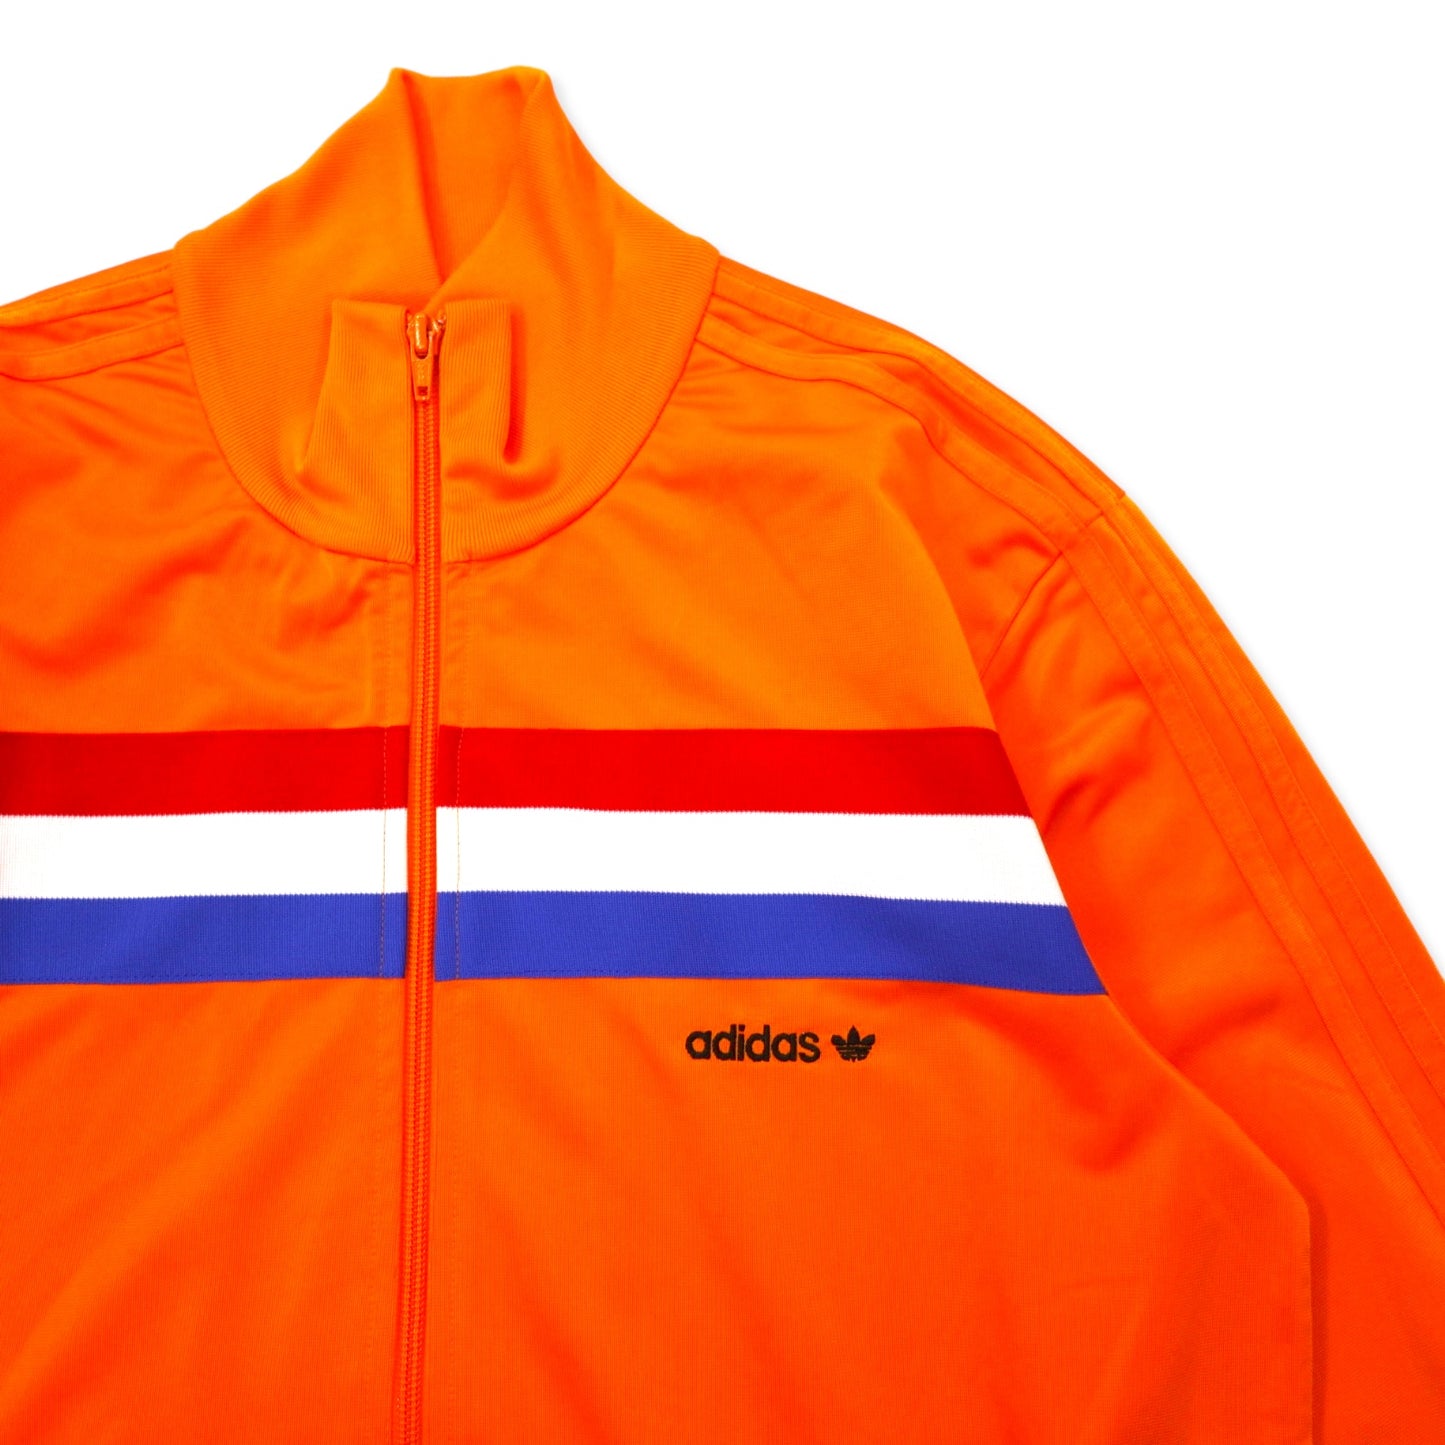 adidas originals トラックジャケット ジャージ O オレンジ ポリエステル トリコロール 3ストライプ トレフォイルロゴ 刺繍 1988 オランダ代表モデル